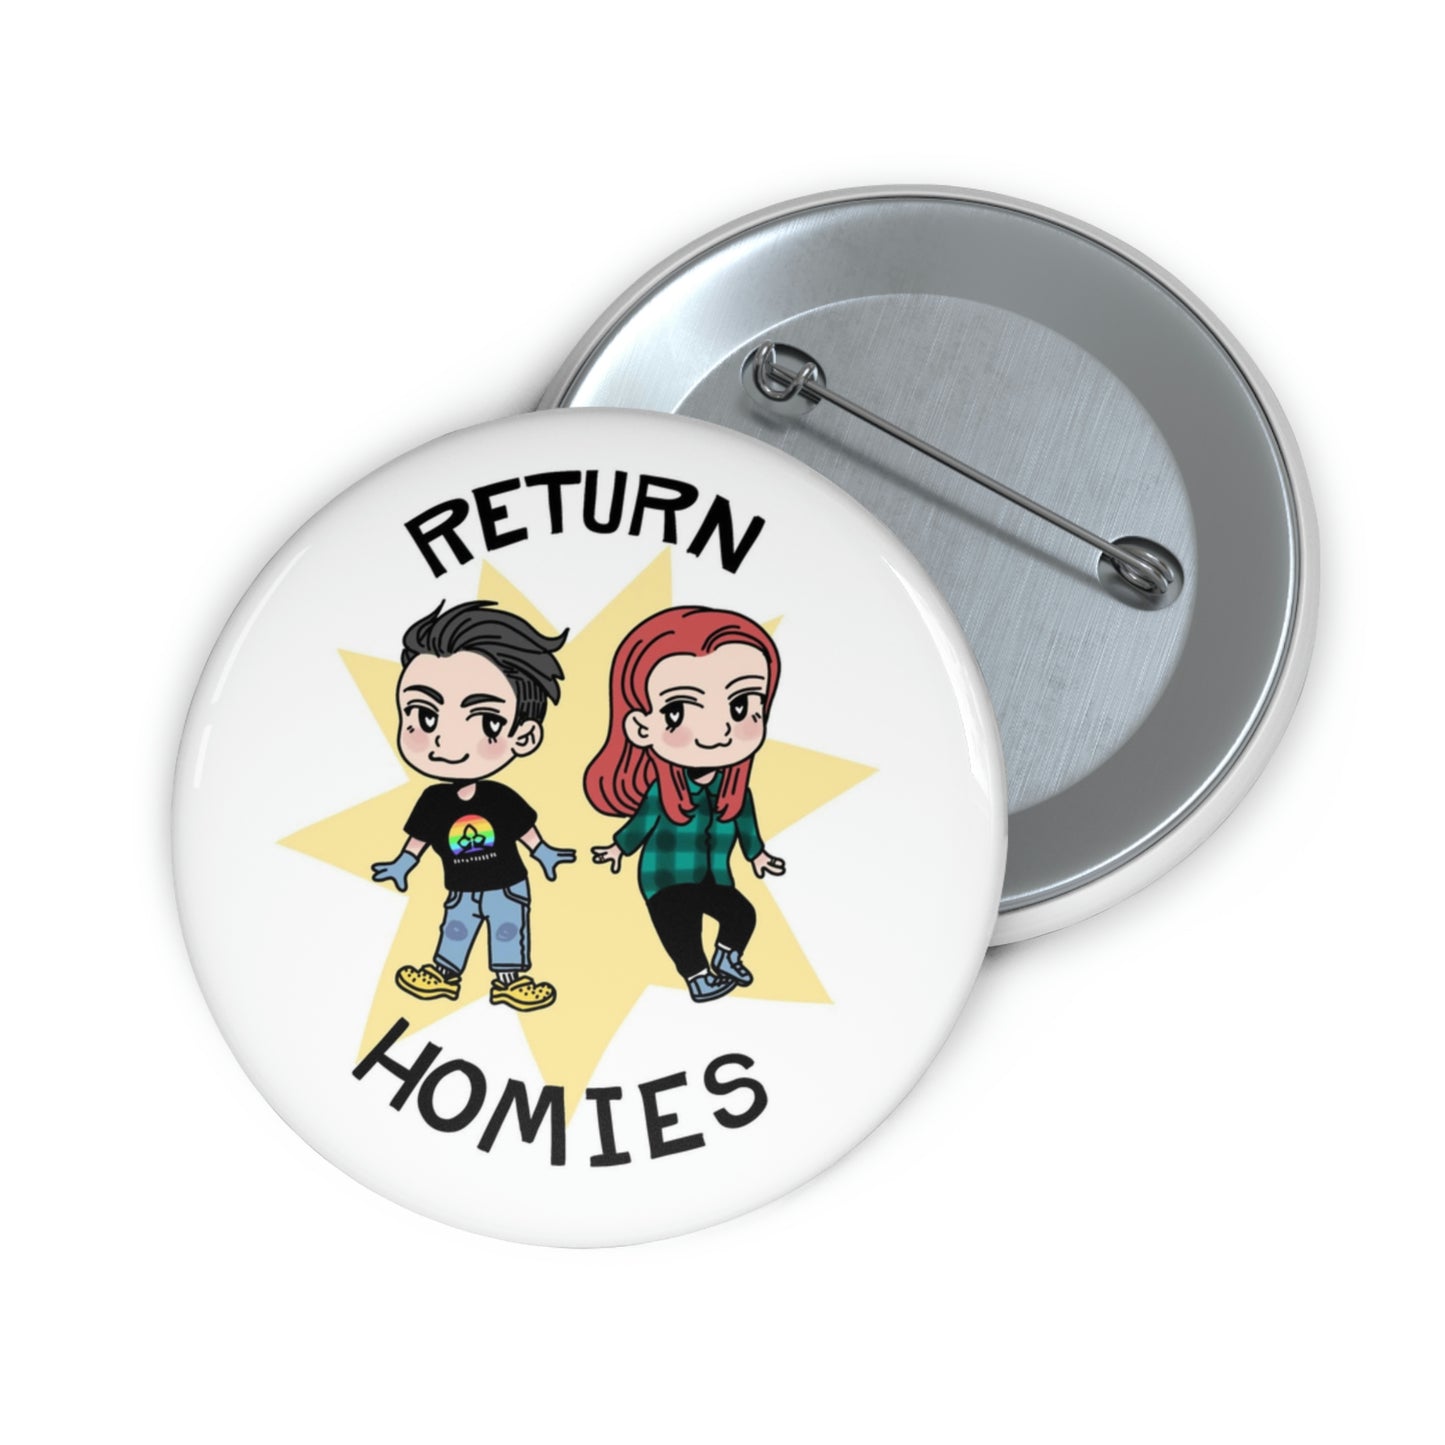 Return Homies Pin Buttons